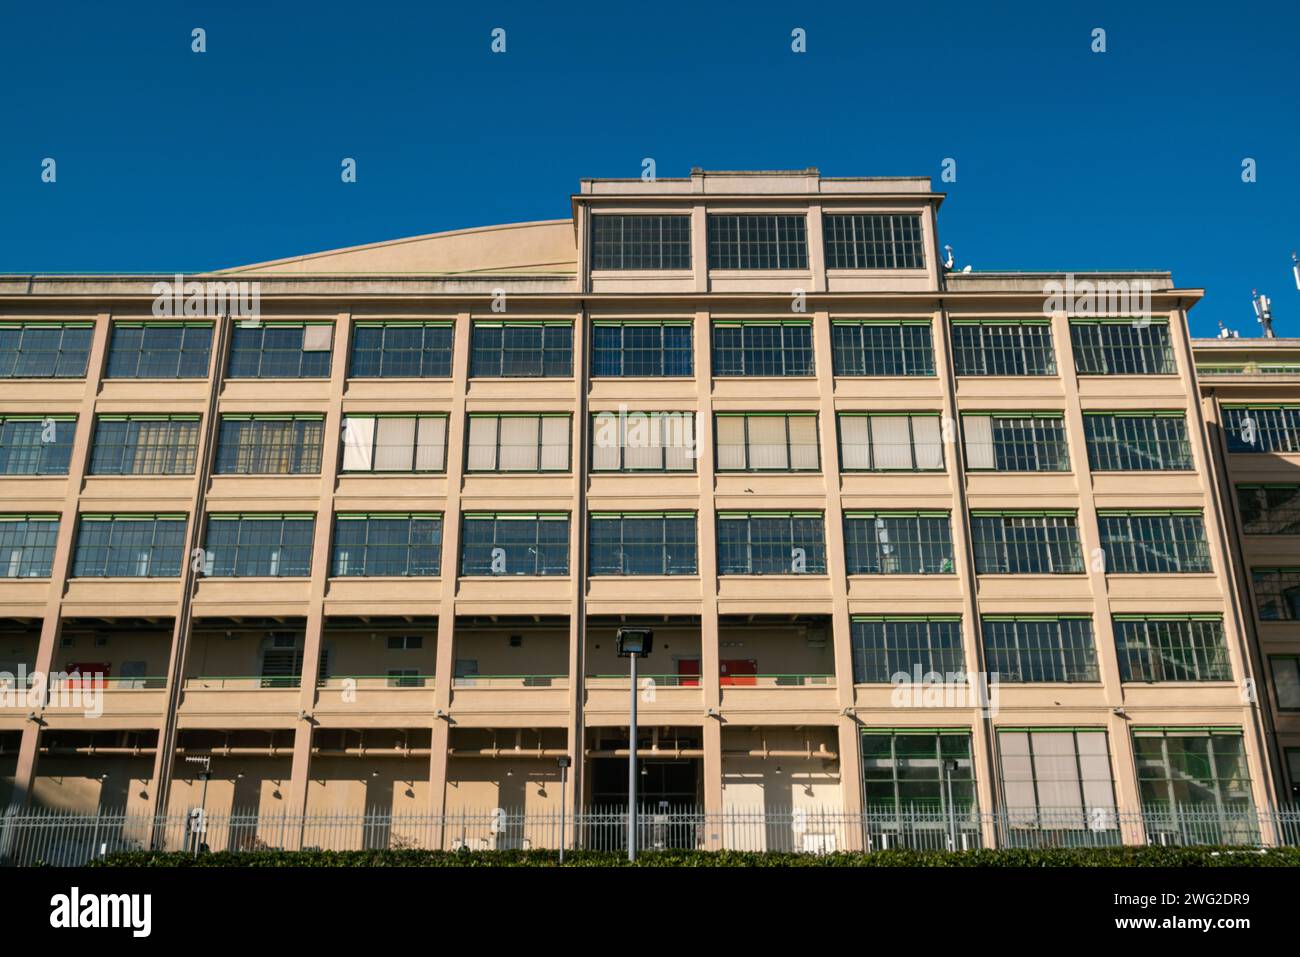 edificio post-industriale riqualificato con spazi multifunzionali, struttura in cemento armato e finestre e tende esterne a doppi vetri. Foto Stock